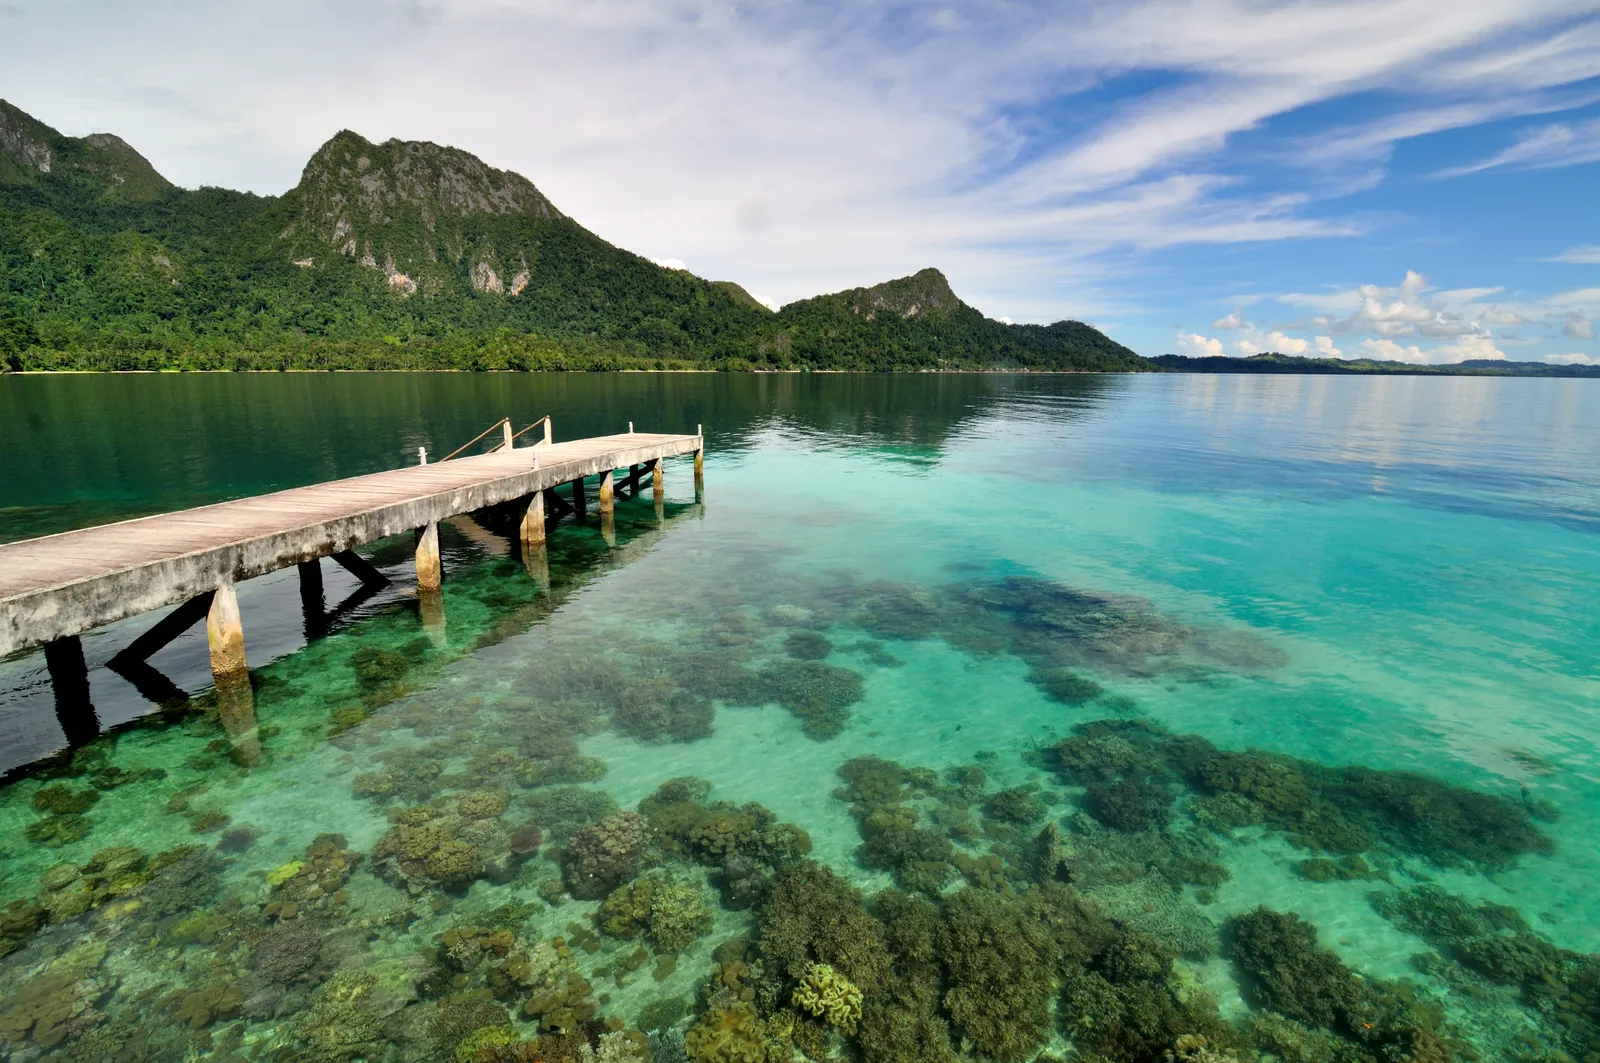 Bãi biển Ora, Indonesia Nằm trên đảo Seram, Bãi biển Ora nổi bật giữa vô số những bãi biển đẹp của Indonesia nhờ sự vắng vẻ và khung cảnh thiên nhiên gần như hoang sơ.